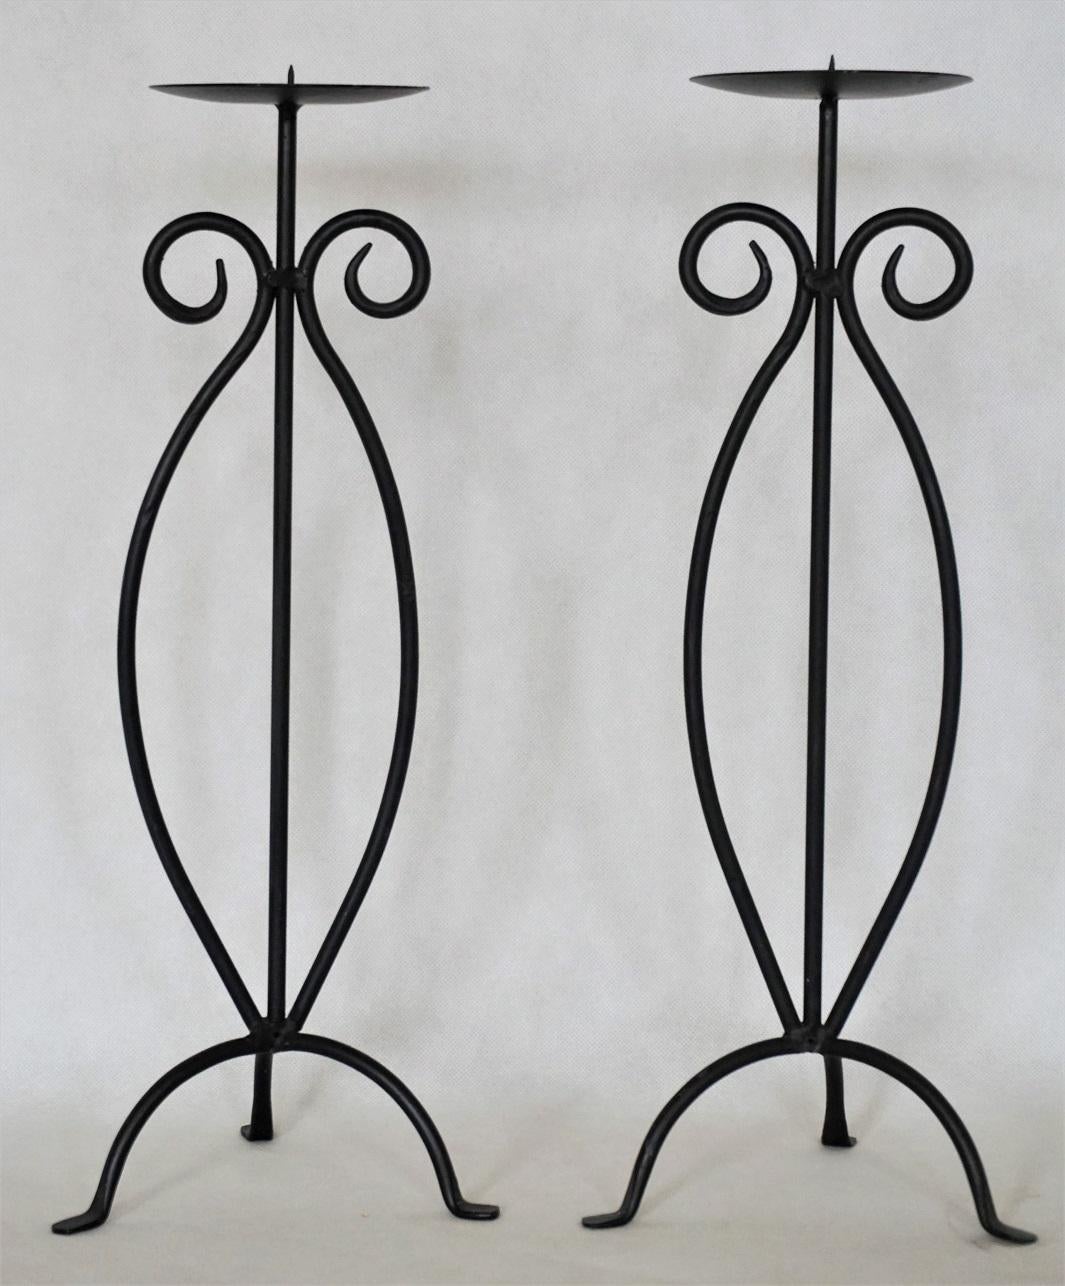 Paar schmiedeeiserne Kerzenhalter auf Dreibeinfuß, schwarz lackiert.
Maßnahmen:
Höhe 17,50 Zoll (44,5 cm)
Breite/Tiefe 16,5 cm (6,50 Zoll).
 